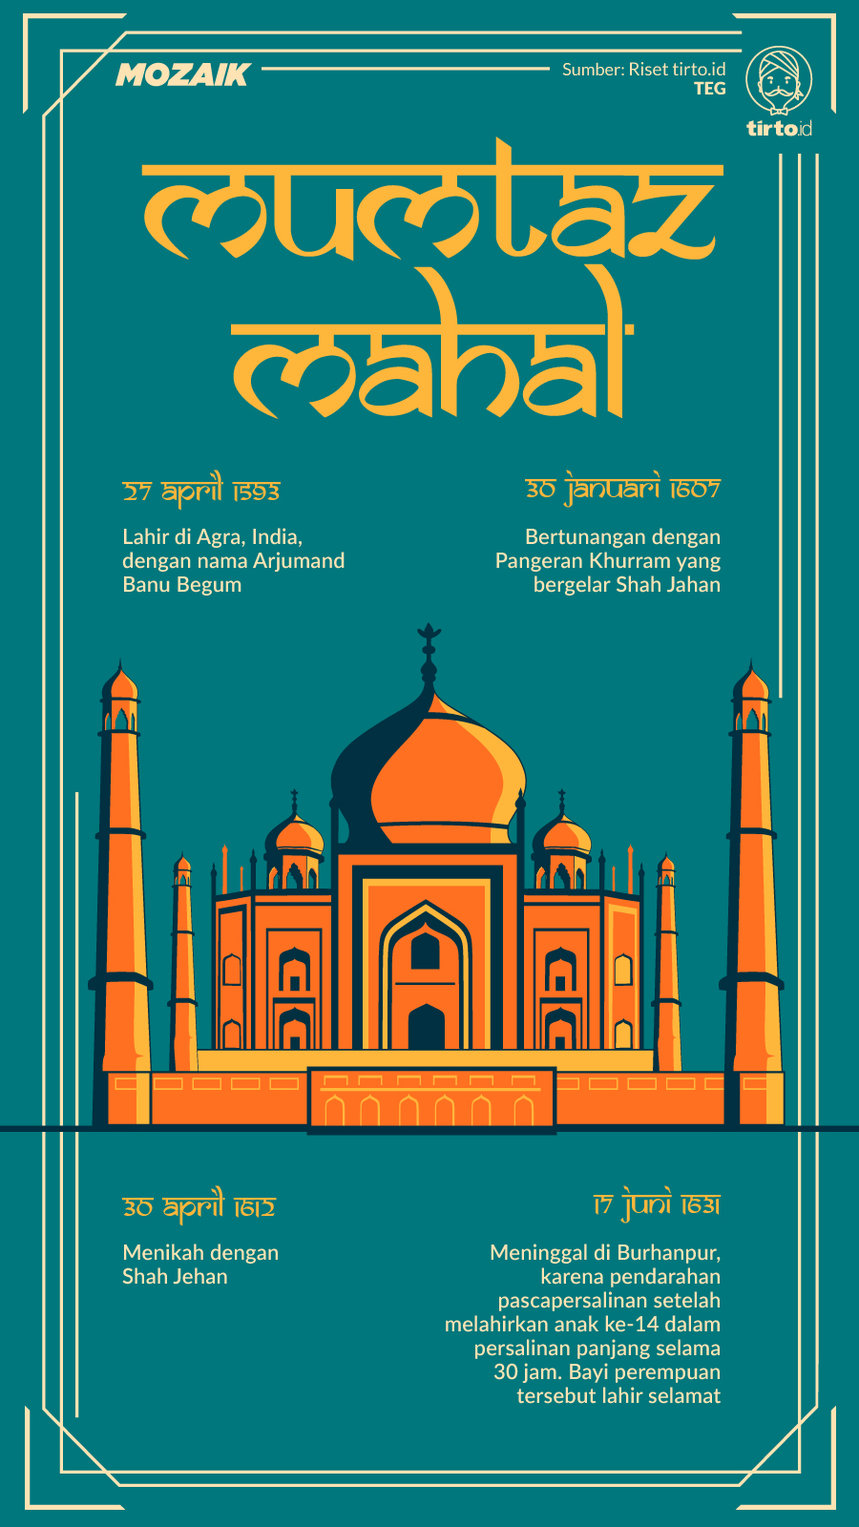 Infografik Mozaik Taj Mahal